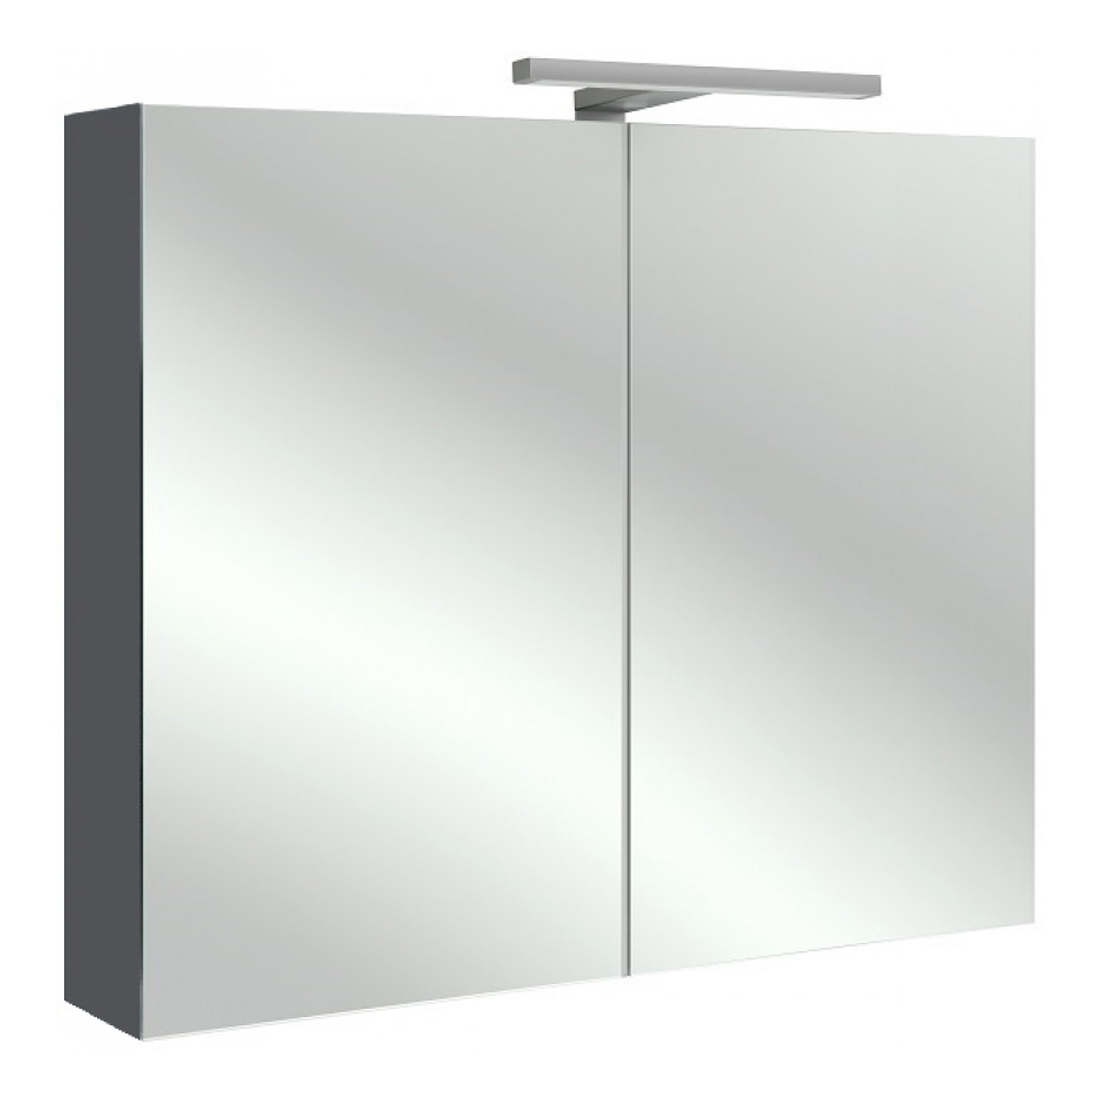 Зеркальный шкаф для ванной Jacob Delafon 80 EB796RU серый антрацит зеркальный шкаф для ванной jacob delafon 80 eb796ru малиновый